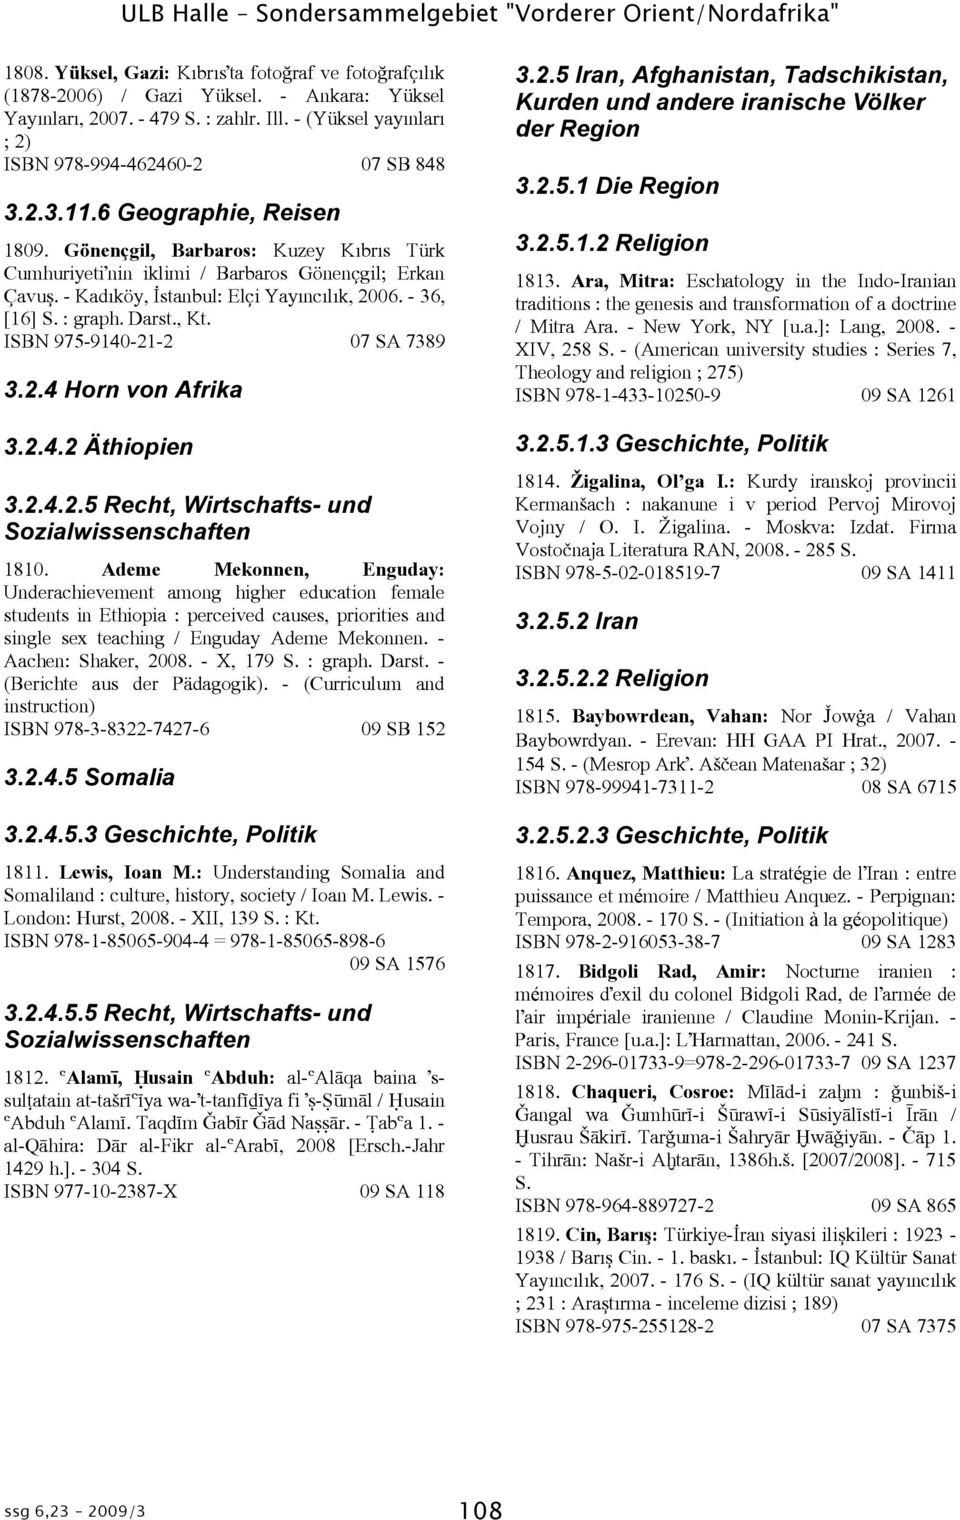 - Kadôköy, ùstanbul: Elçi Yayôncôlôk, 2006. - 36, [16] S. : graph. Darst., Kt. ISBN 975-9140-21-2 07 SA 7389 3.2.4 Horn von Afrika 3.2.4.2 Äthiopien 3.2.4.2.5 Recht, Wirtschafts- und Sozialwissenschaften 1810.